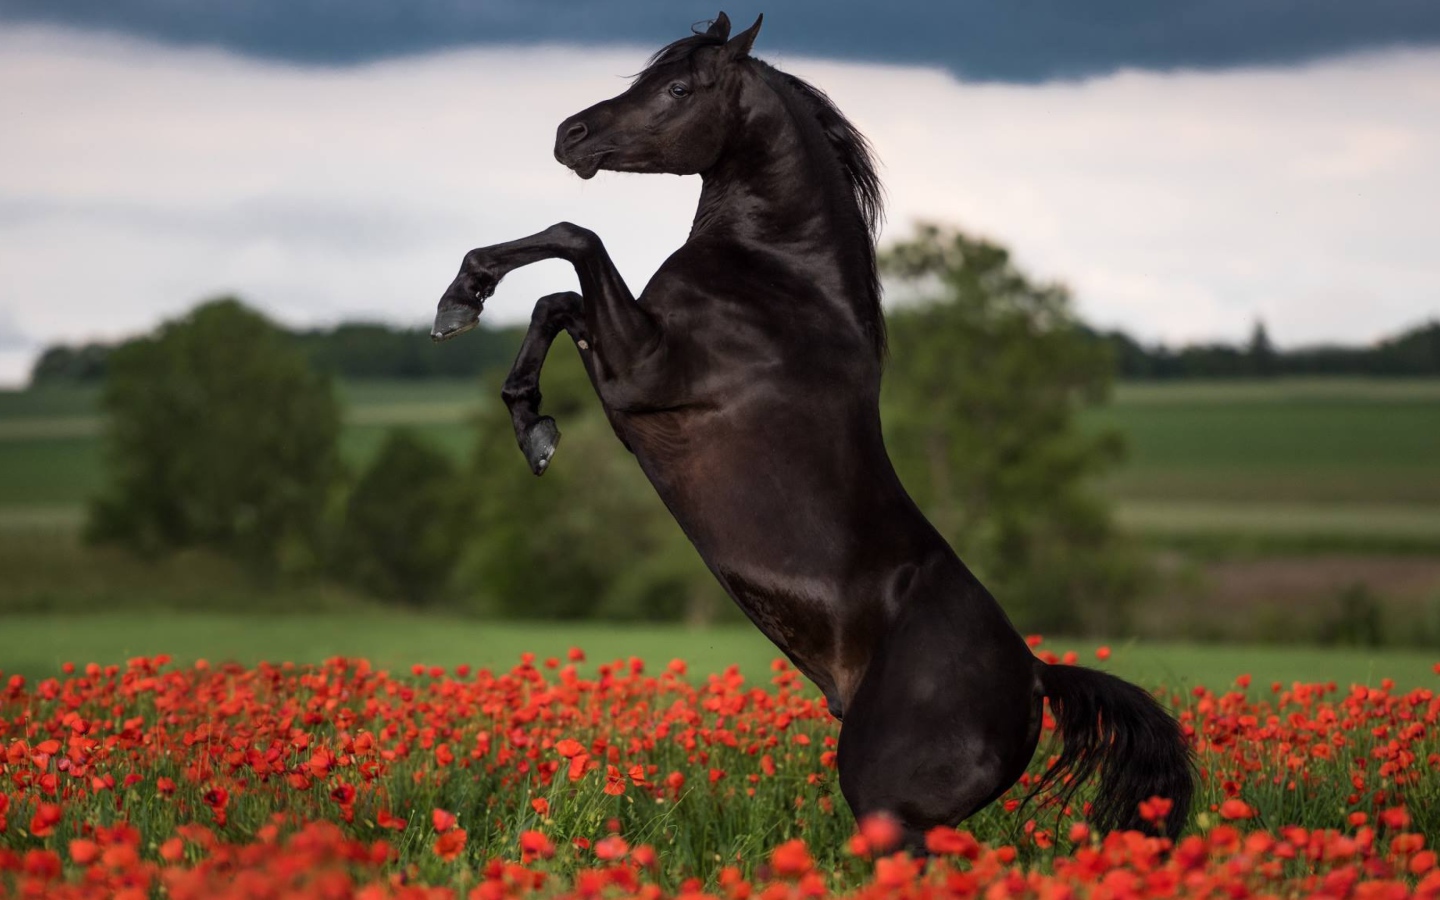 Прыжок коня на поле с красными маками